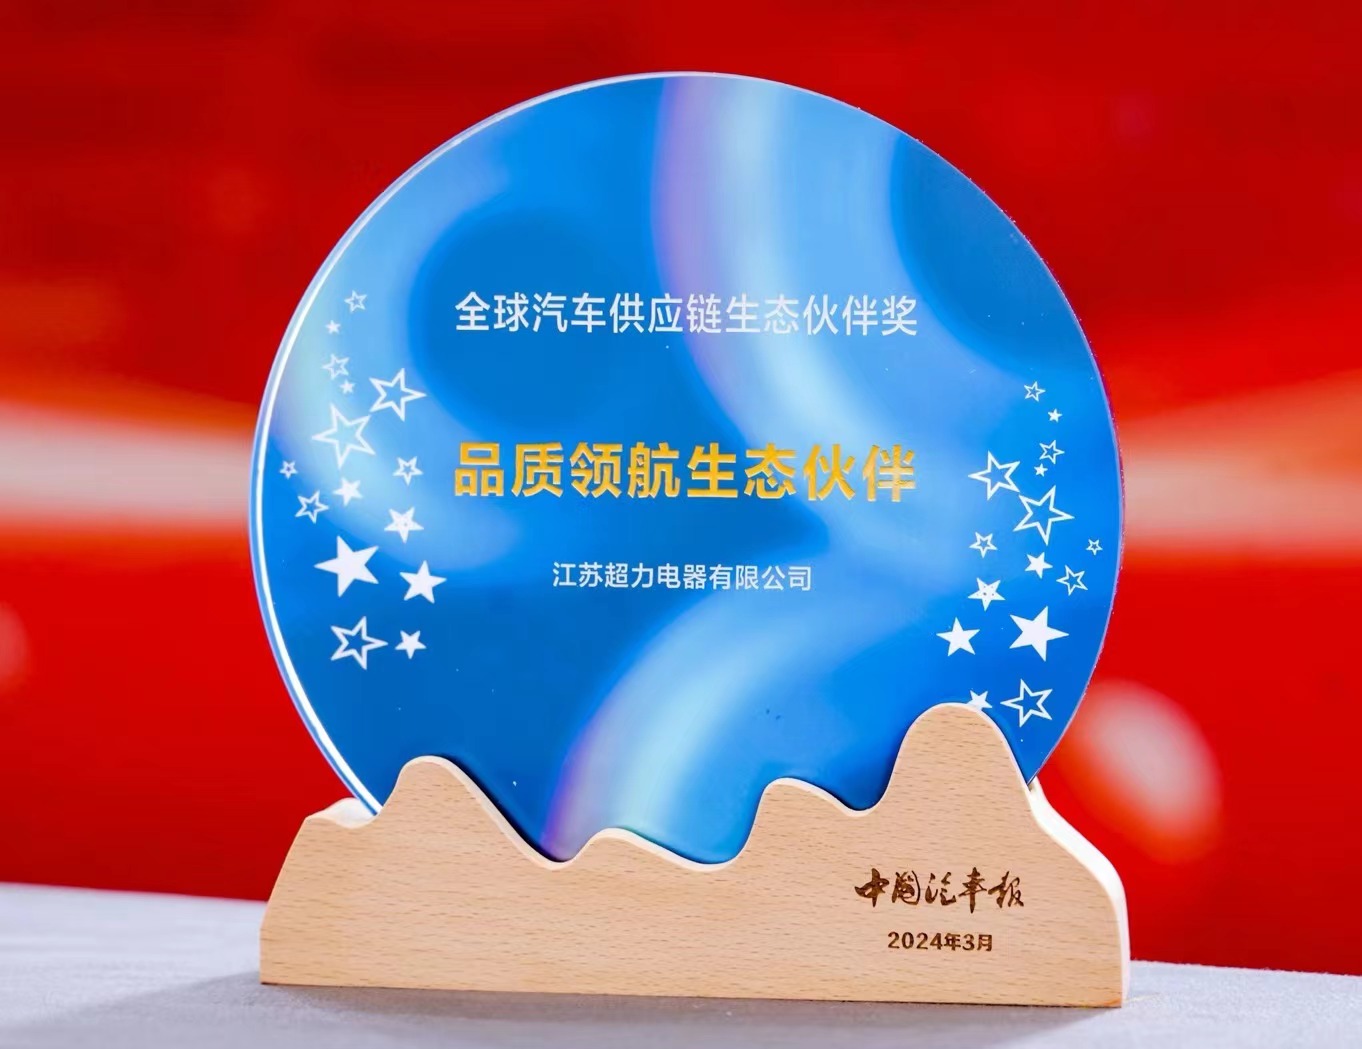 Jiangsu Chaoli was awarded the 